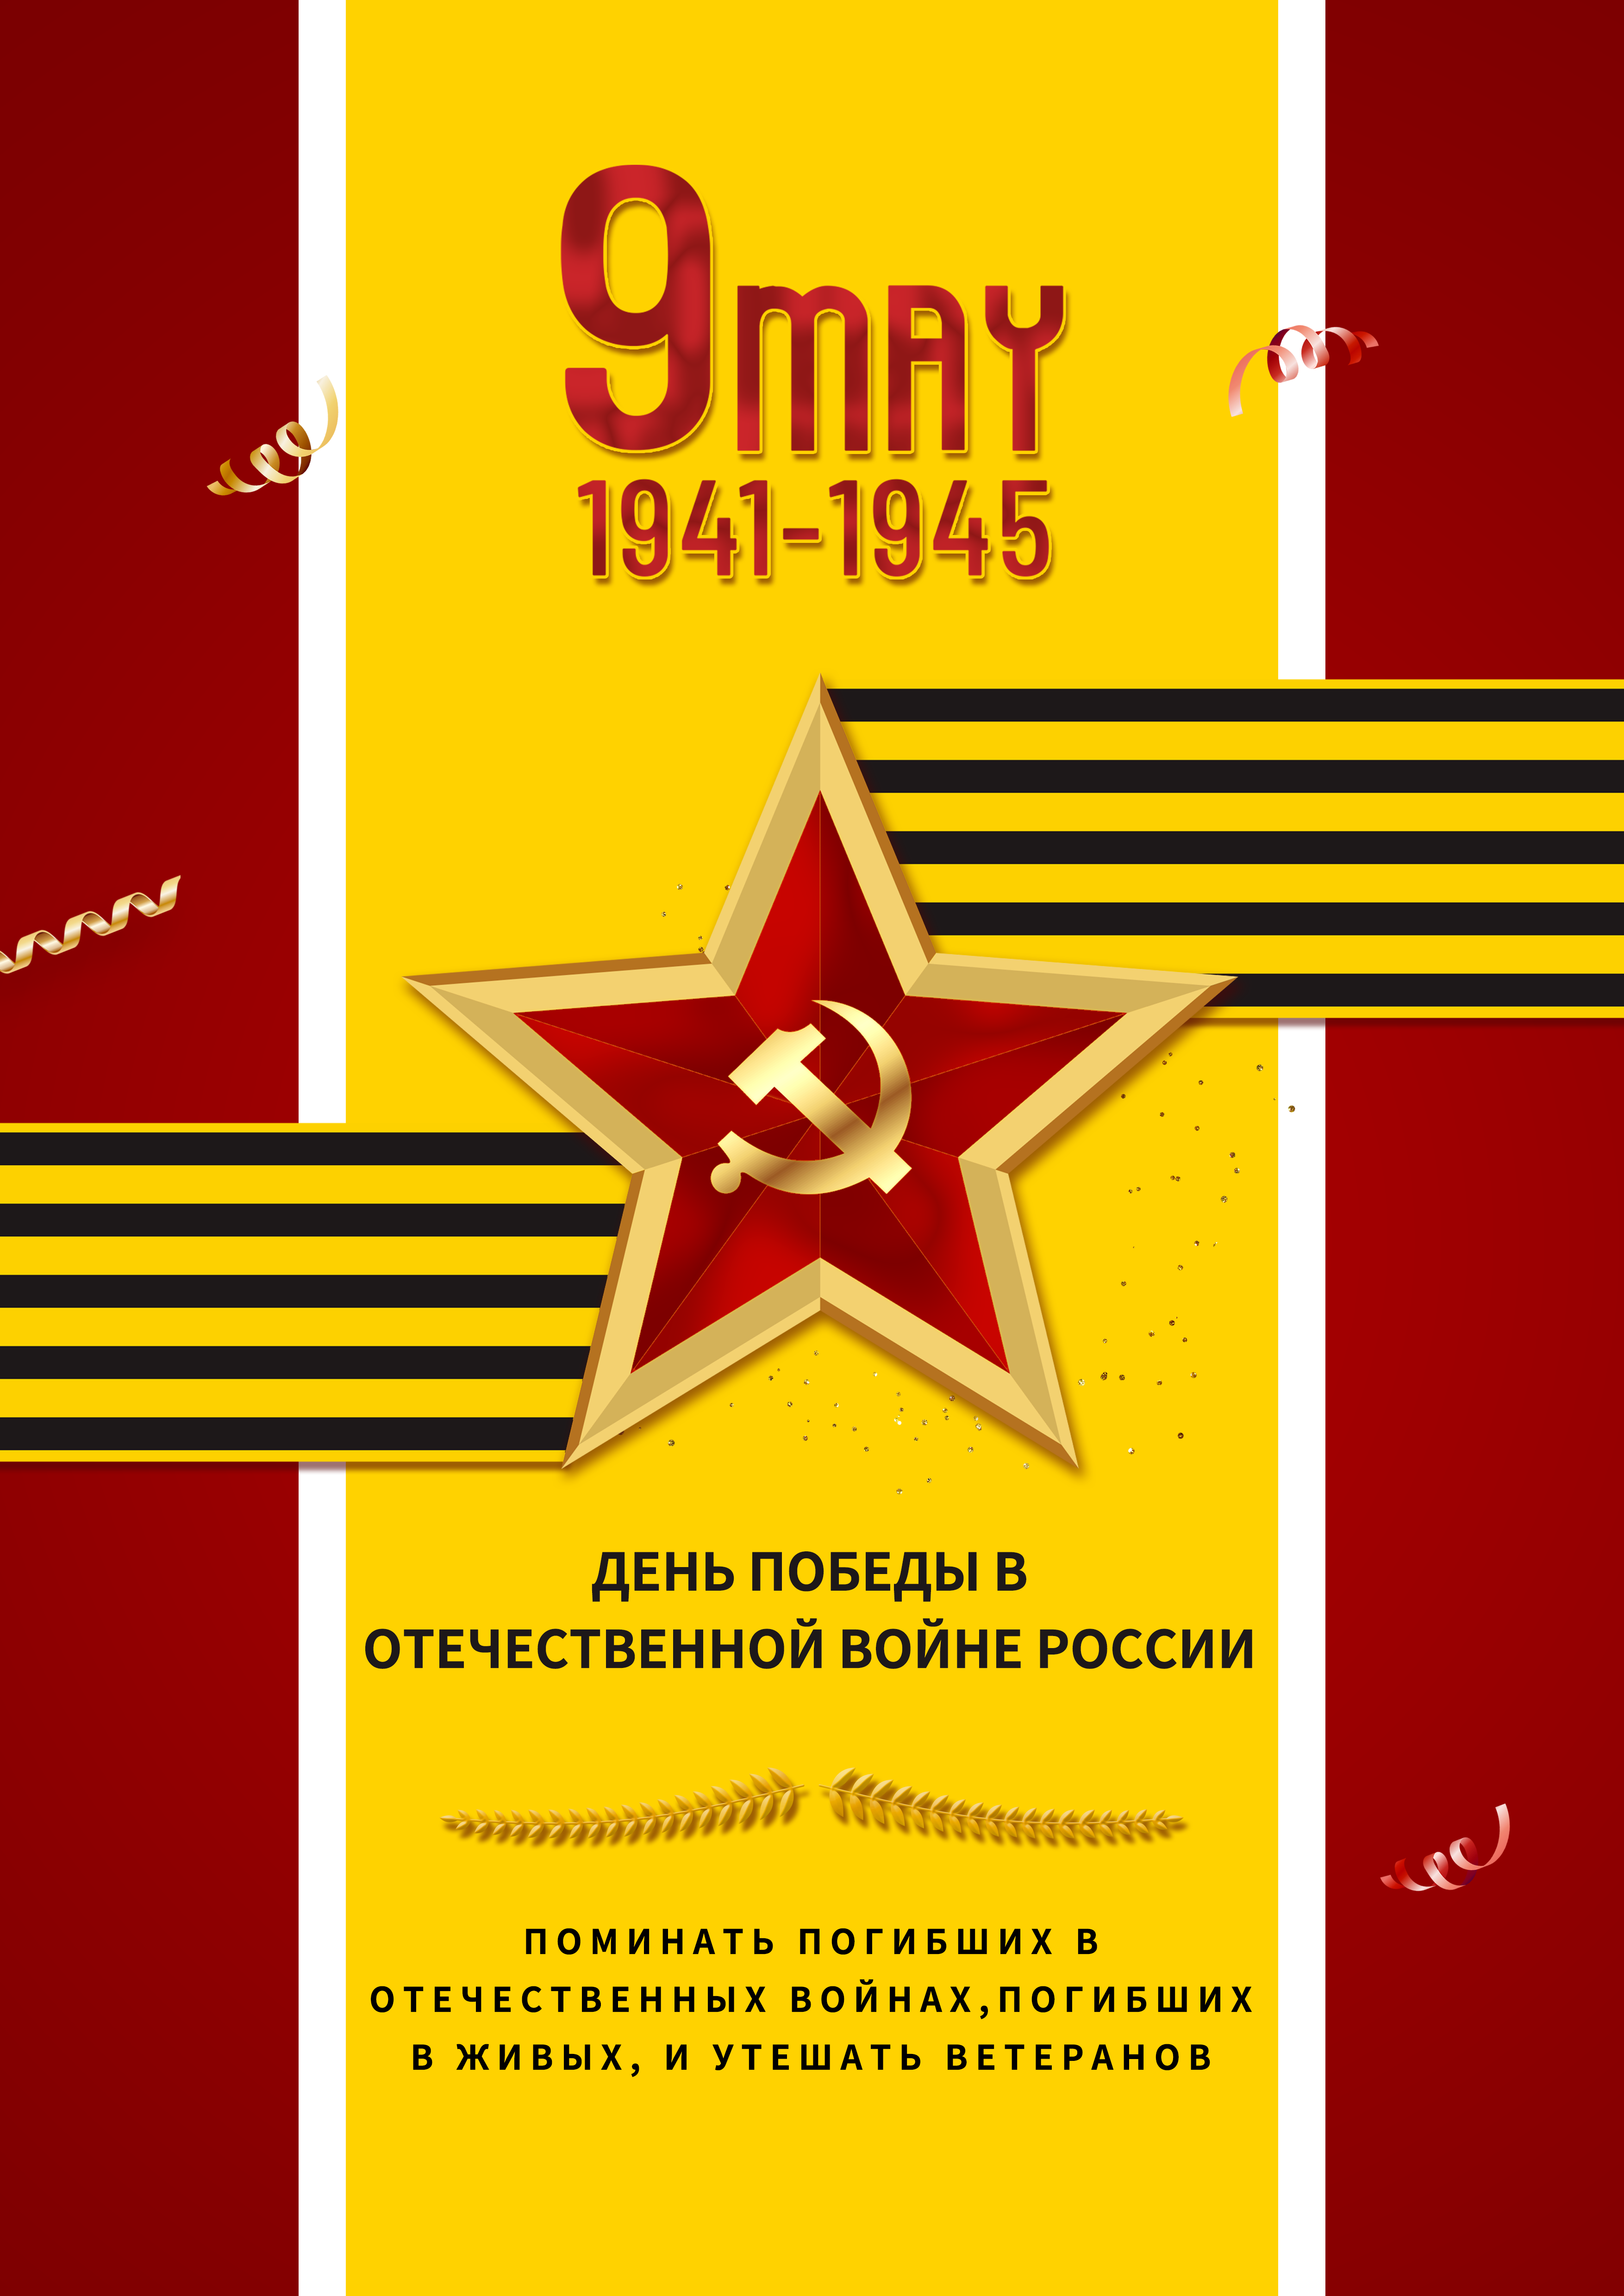 黄色红色背景星星俄罗斯卫国战争胜利日图片